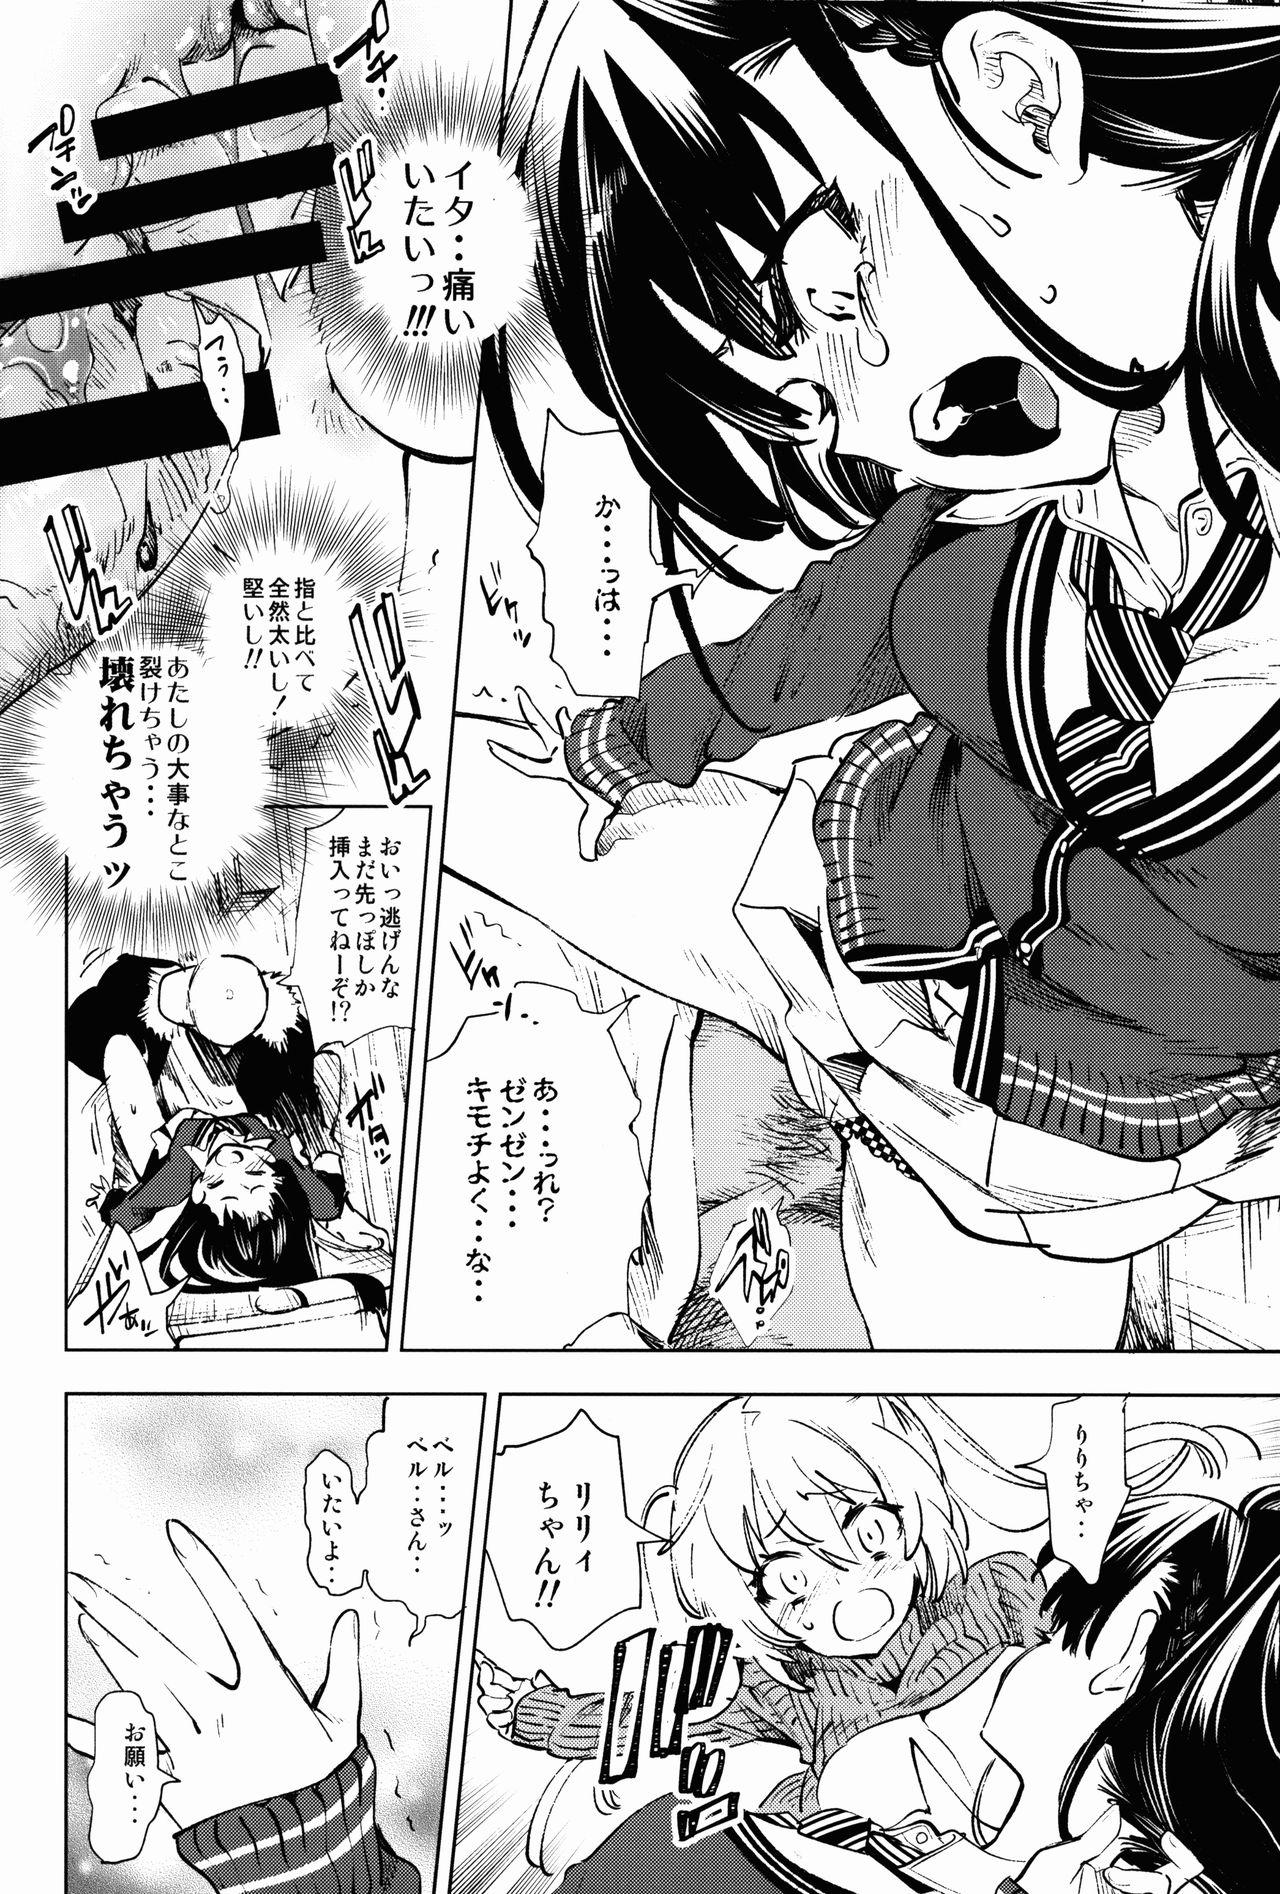 Real Orgasms Housoujiko 5 - Original Chibola - Page 12